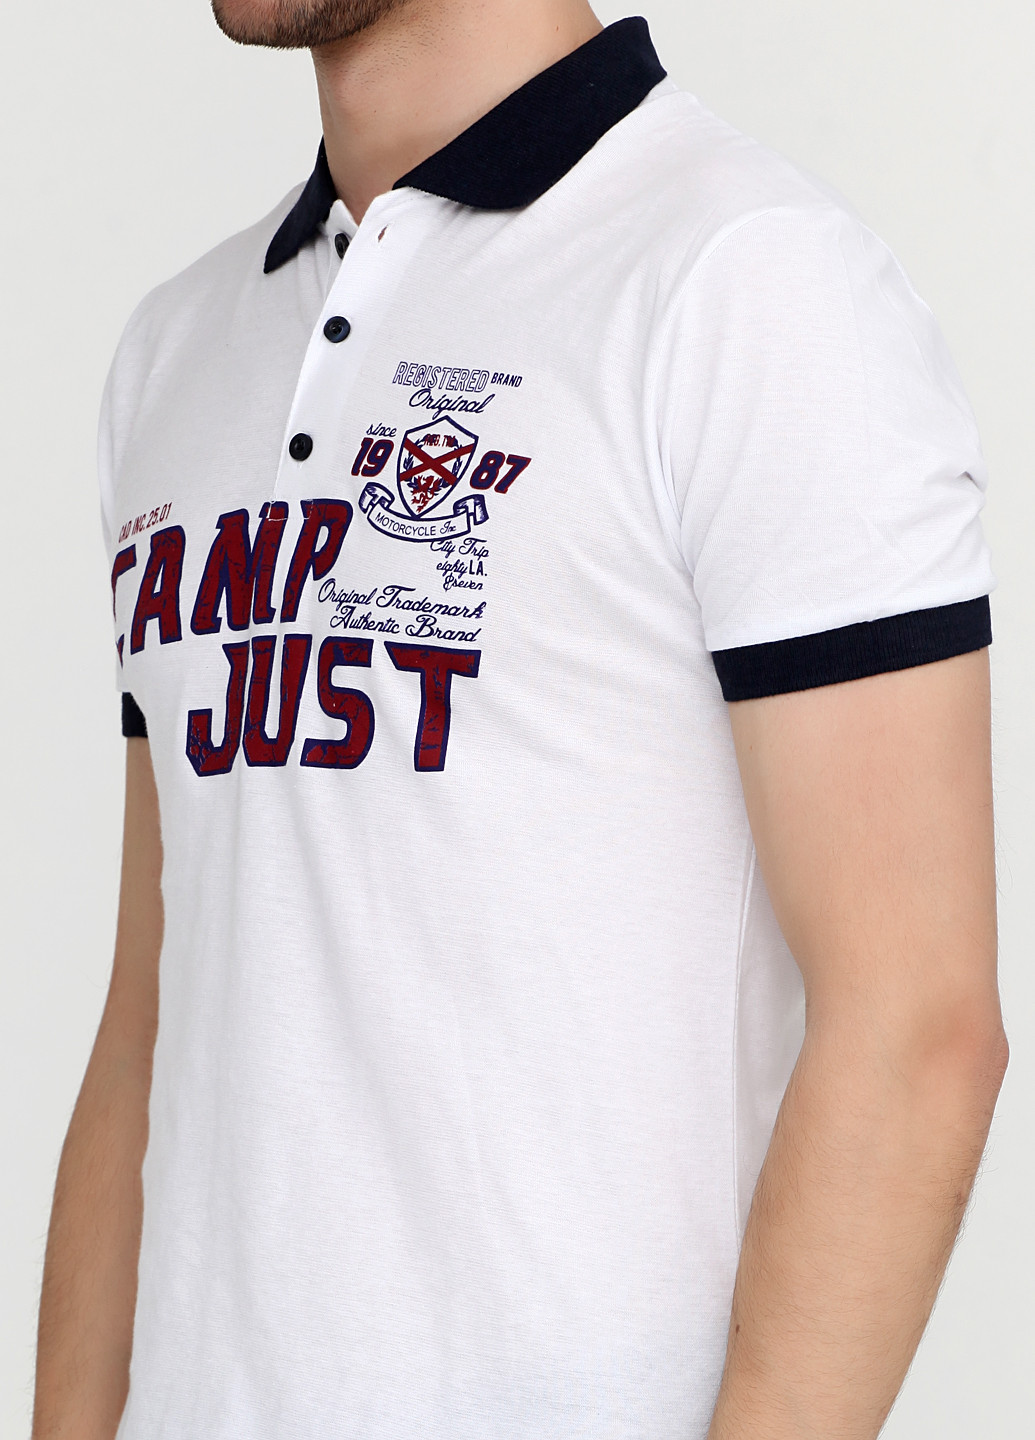 Белая футболка-поло для мужчин Chiarotex с логотипом